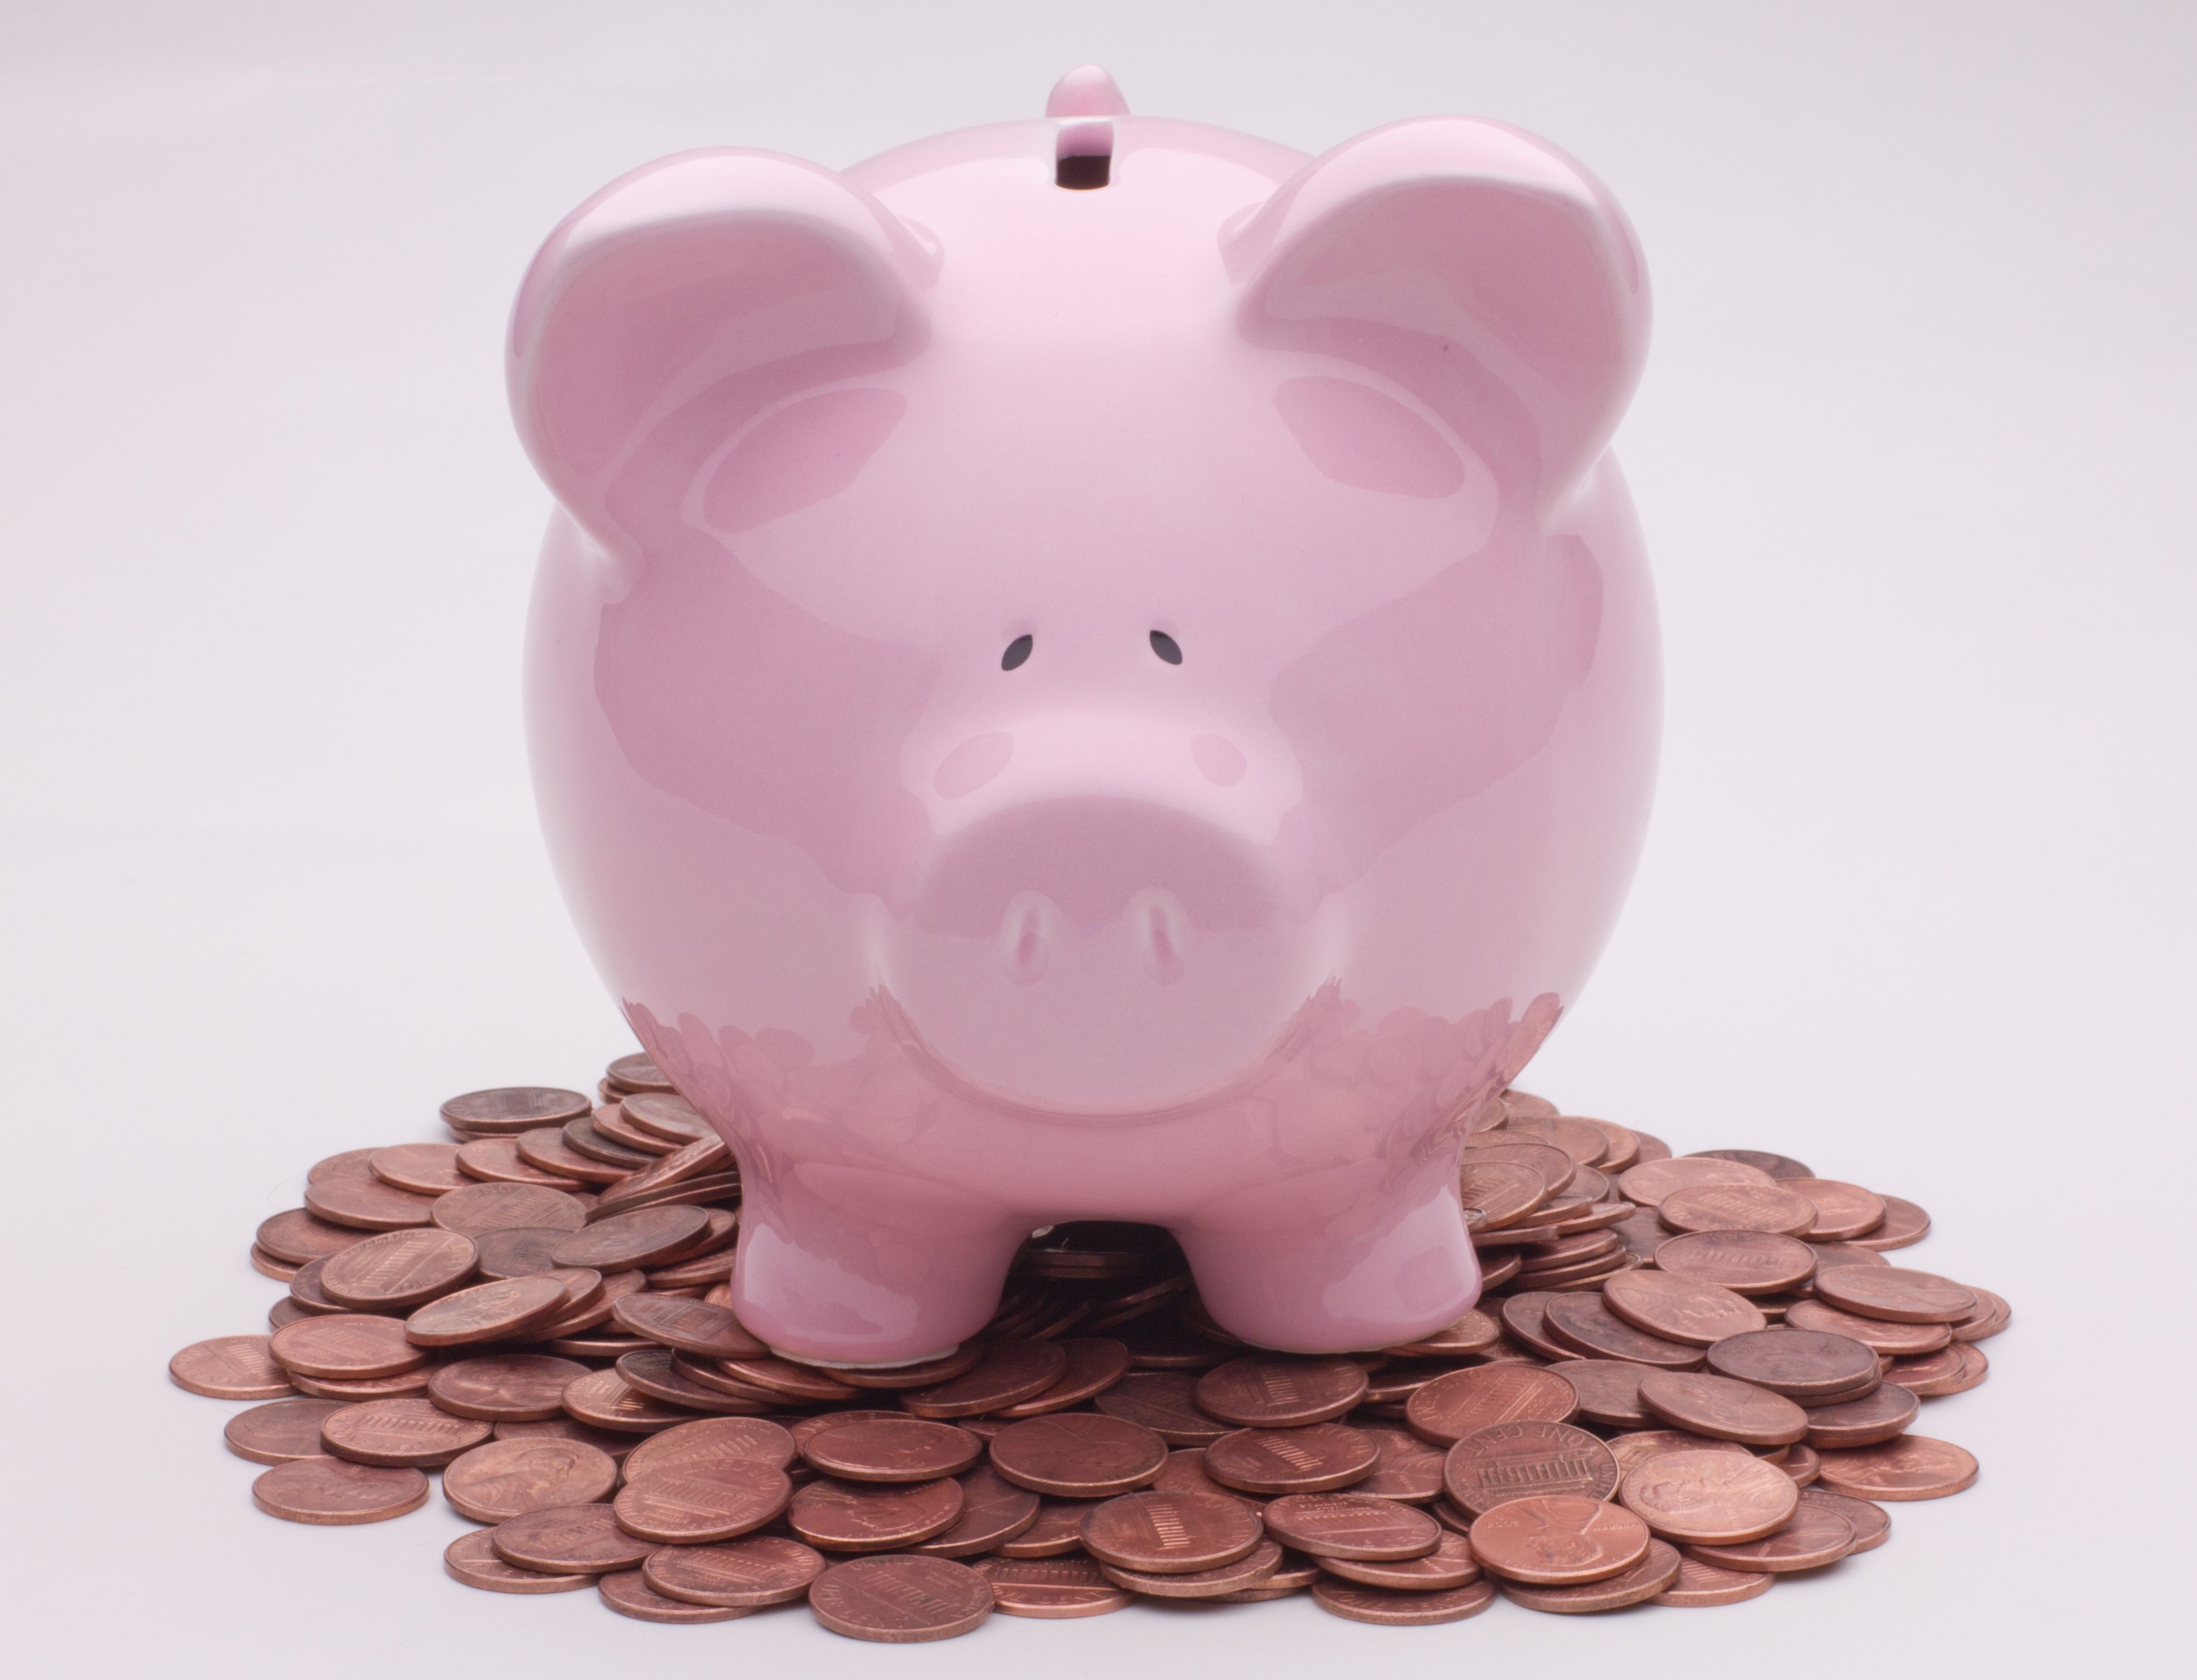 Piggy Bank Coin Money Wallpaper .wallha.com